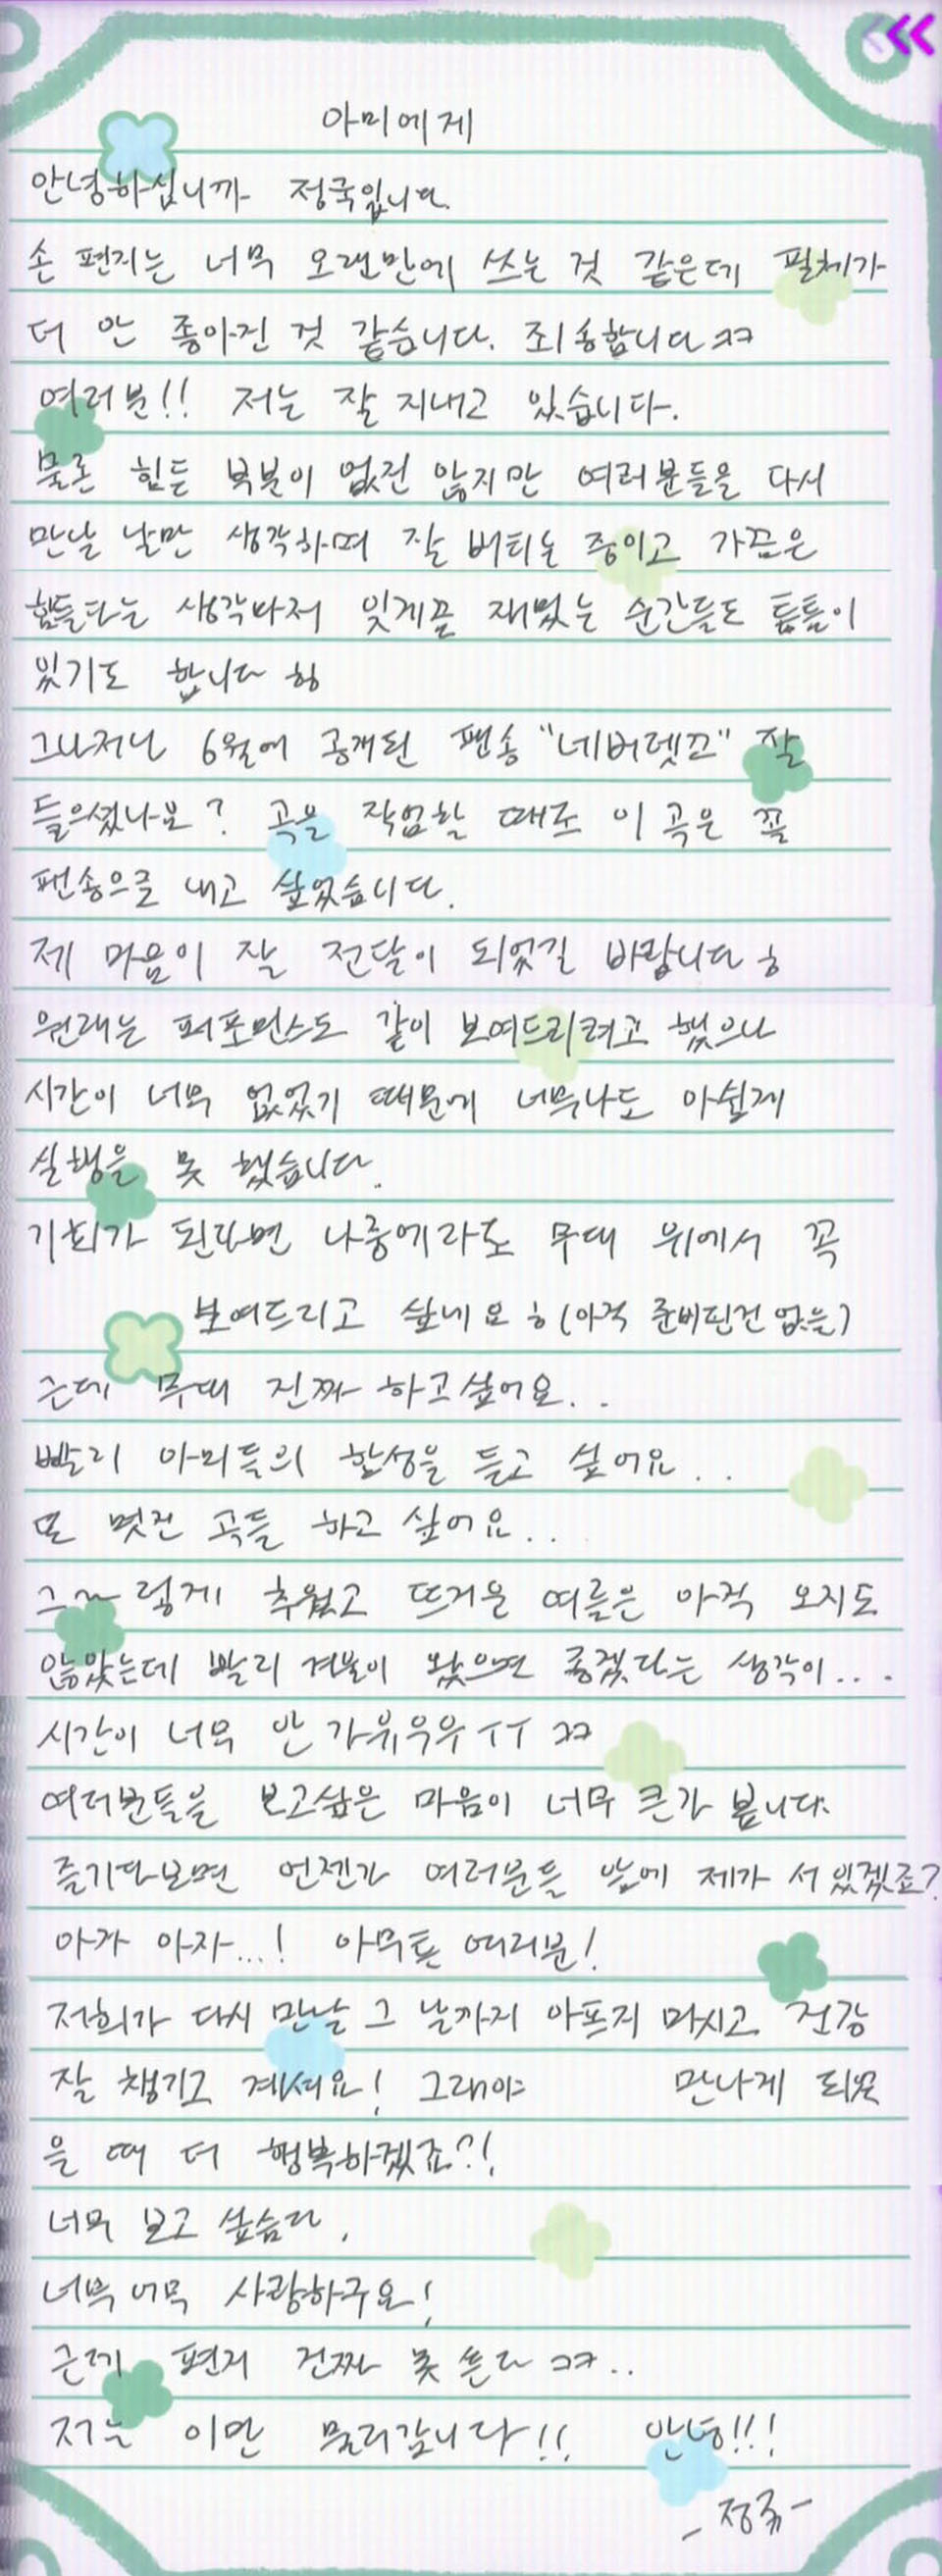 Image : 2024 BTS FESTA - Jungkook's Handwritten Letter (Weverse Live Screenshot)